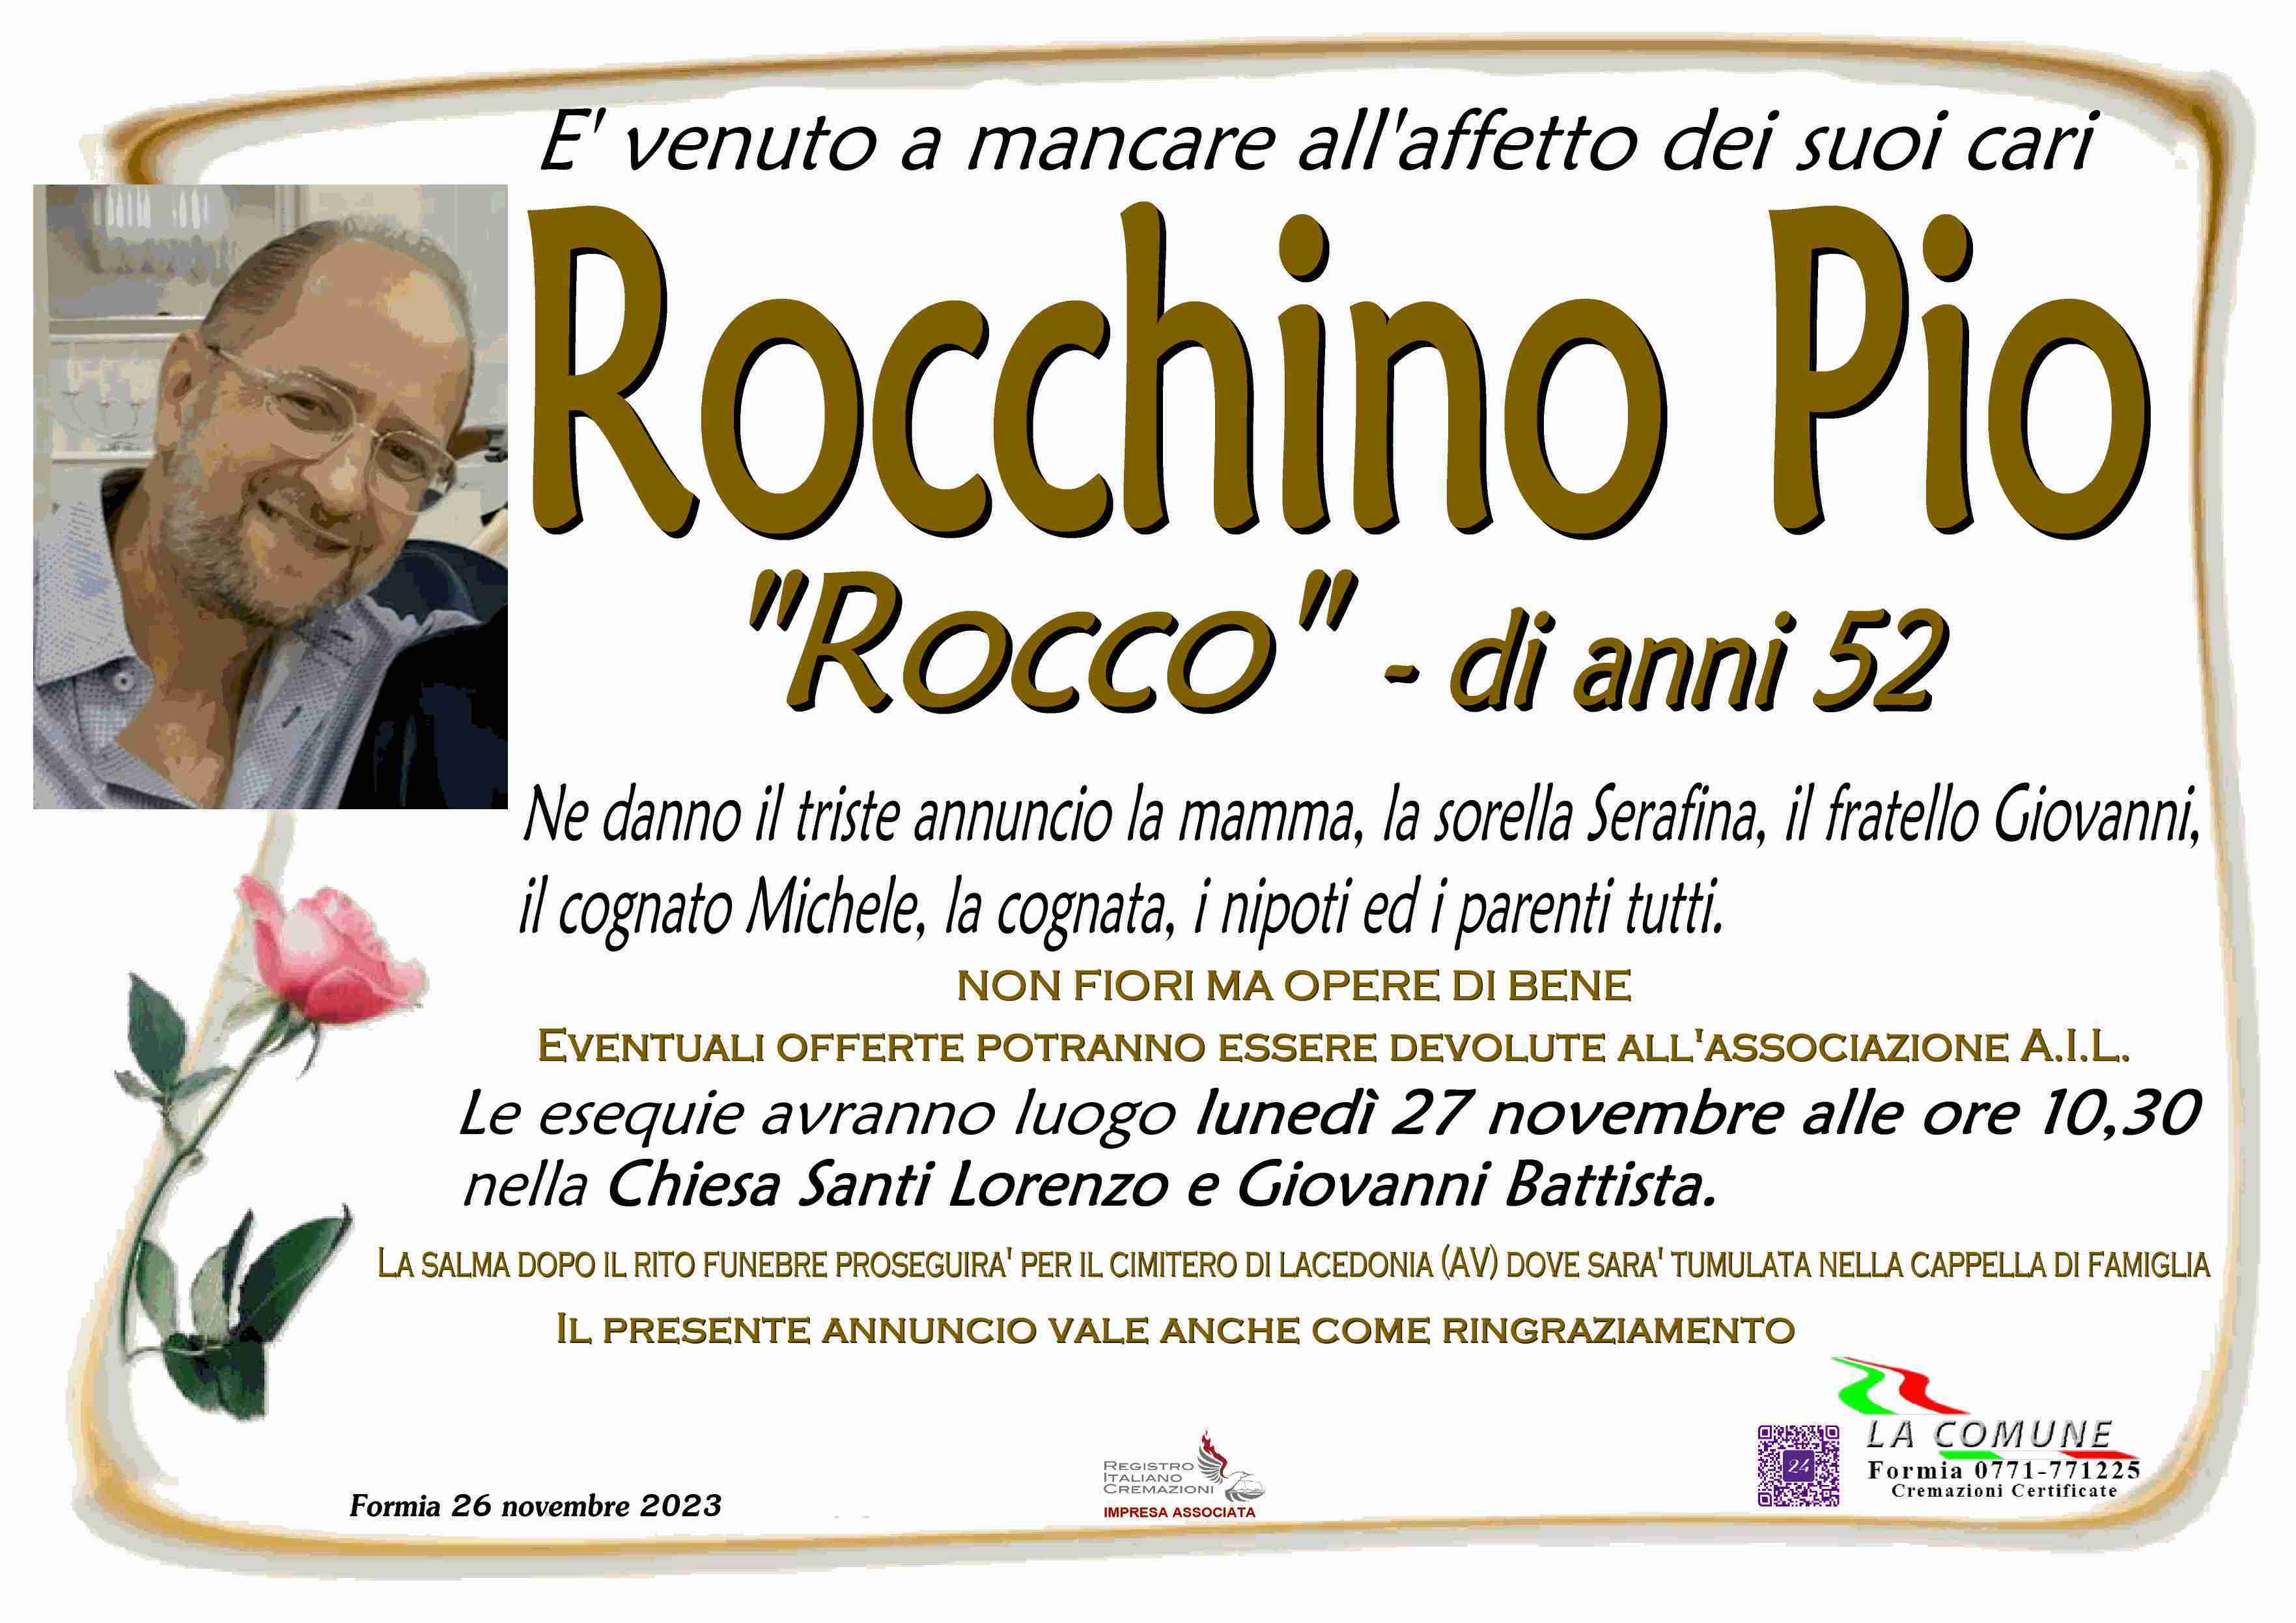 Rocchino Pio